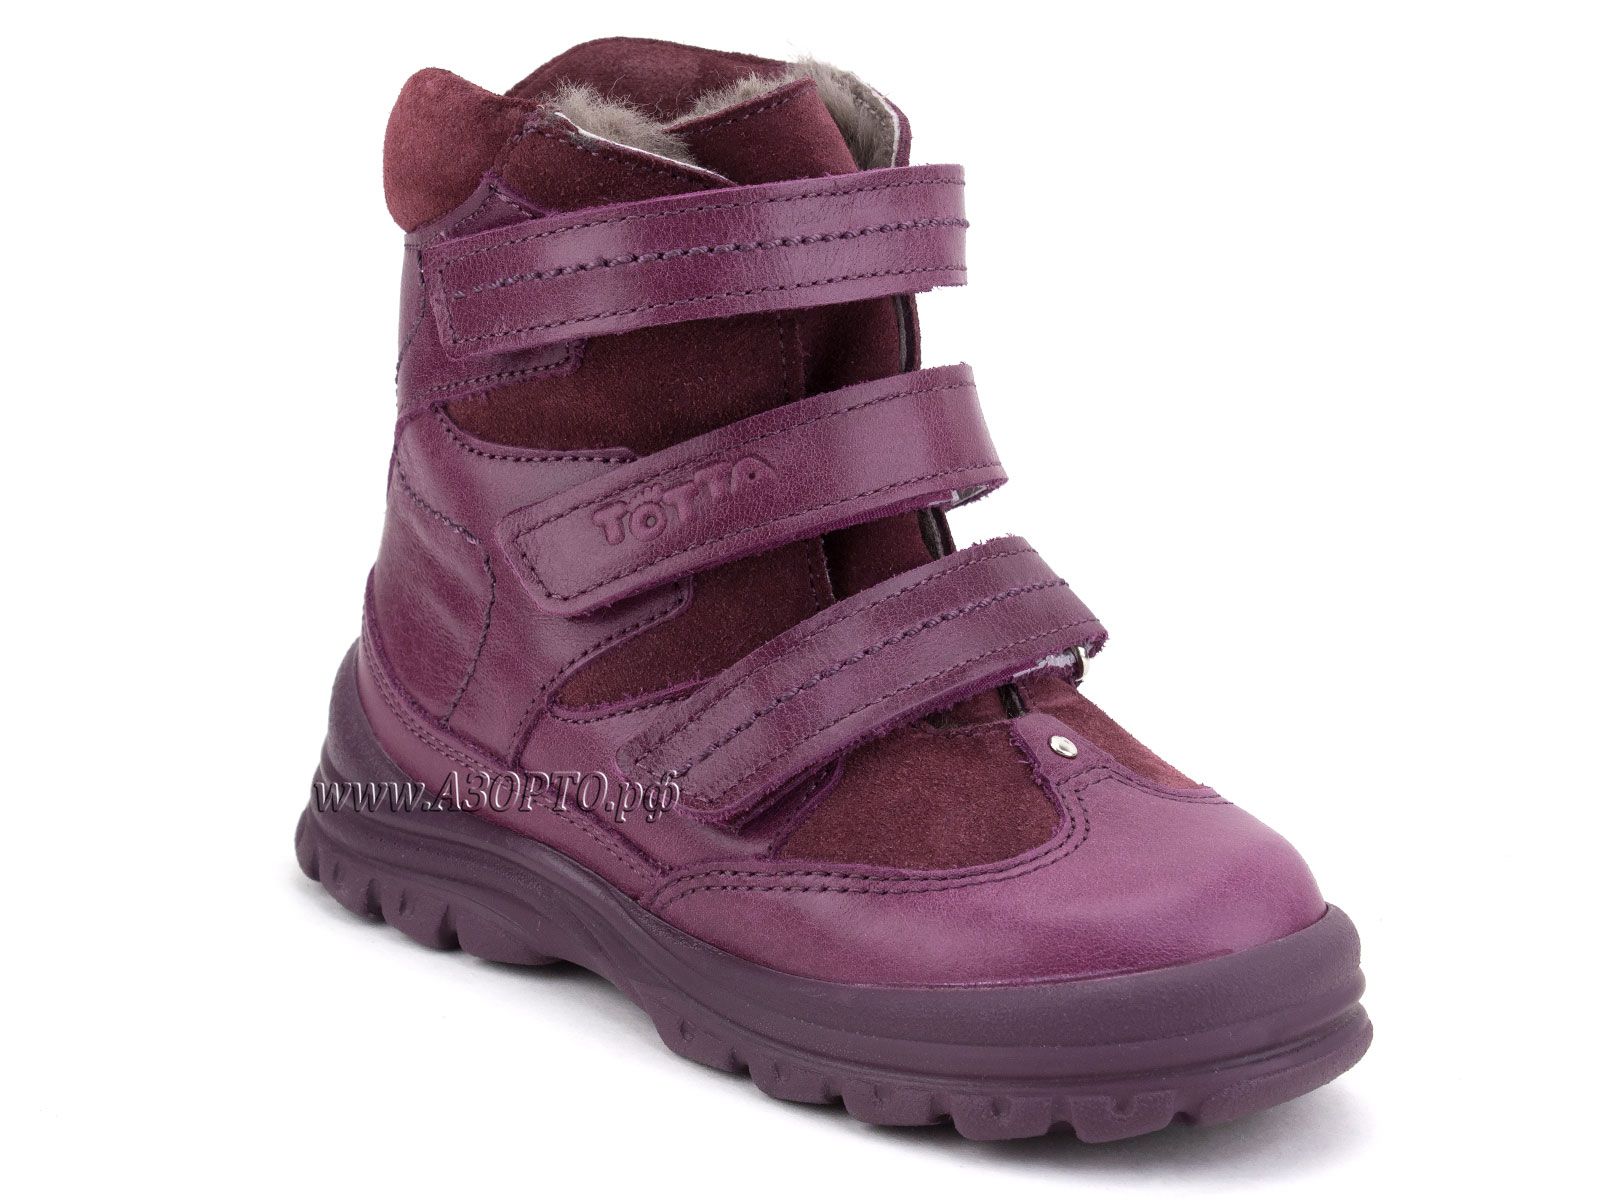 202-0189,016 Тотто (Totto), ботинки детские зимние ортопедические профилактические, мех, кожа, лиловый.